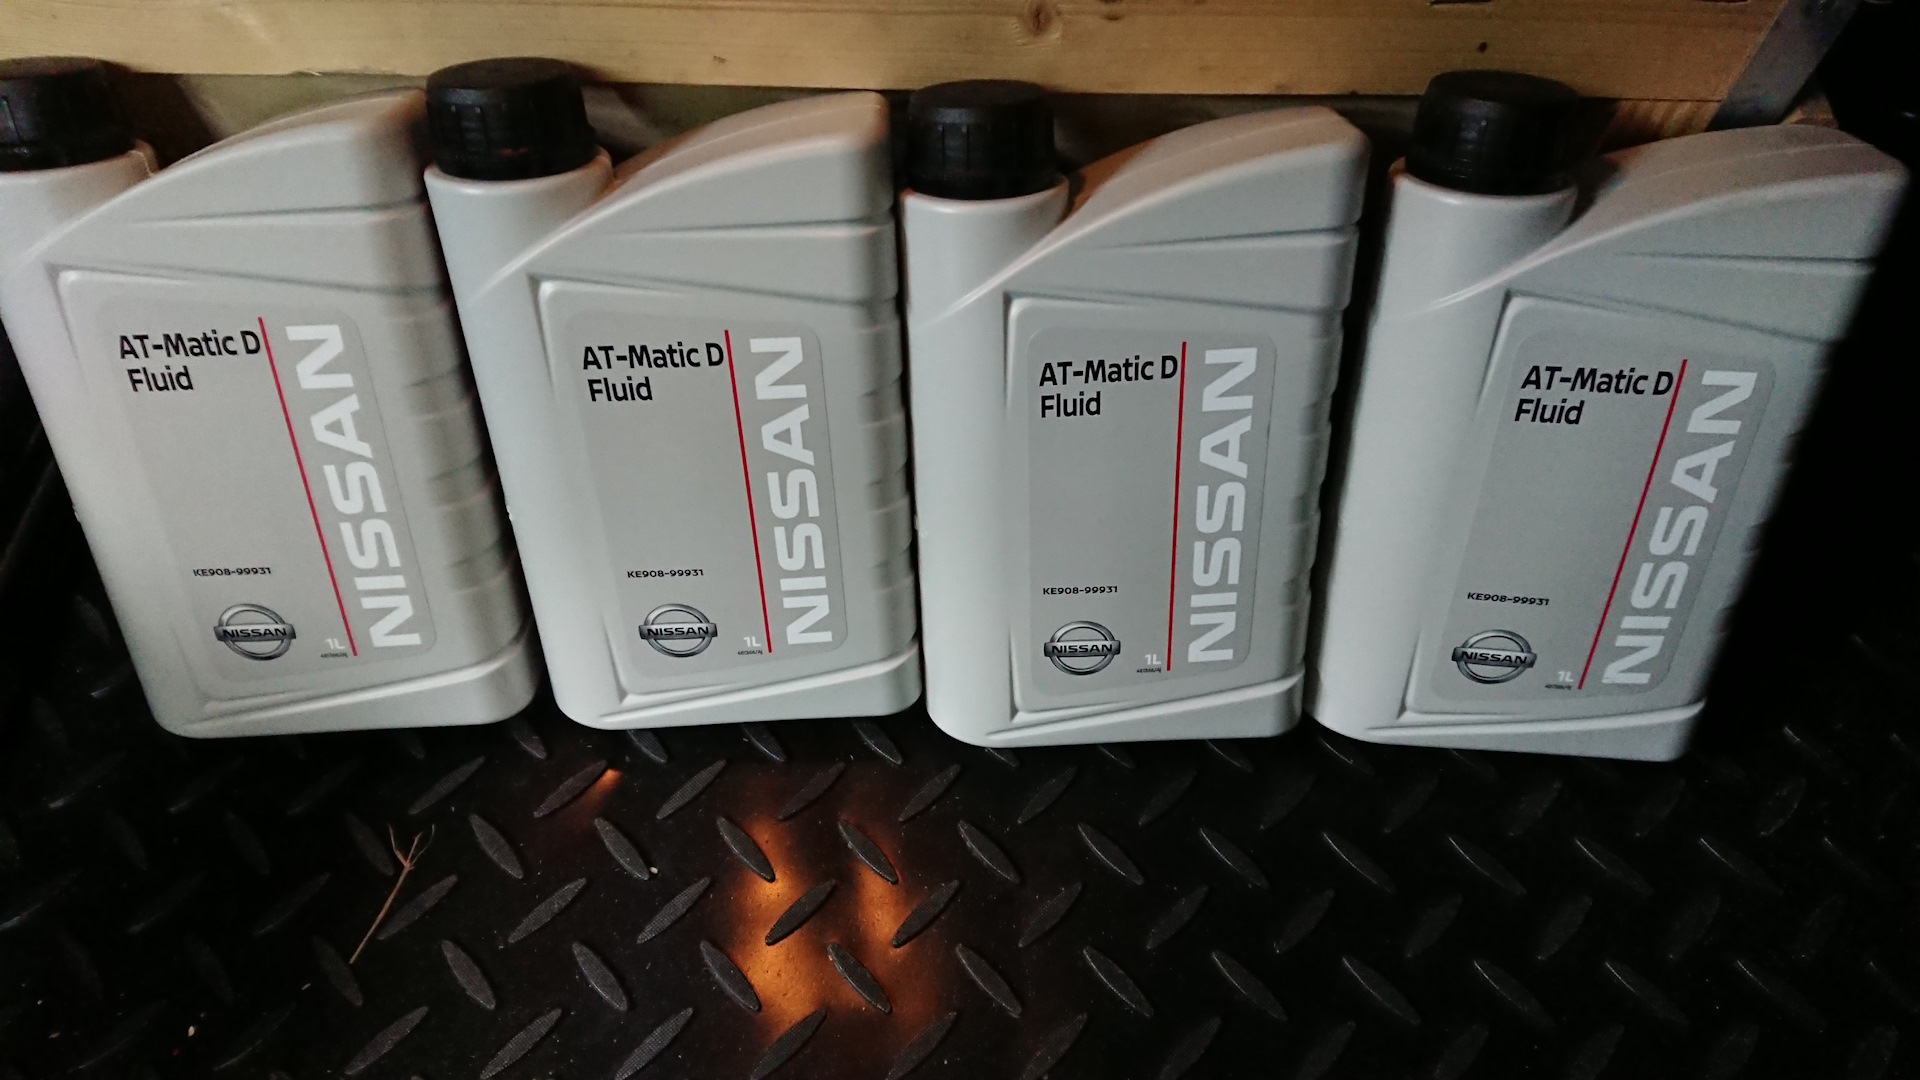 Ниссан санни какое масло. Масло АКПП Nissan Terrano 2016 артикул. Nissan Sunny 2001 масло в АКПП.